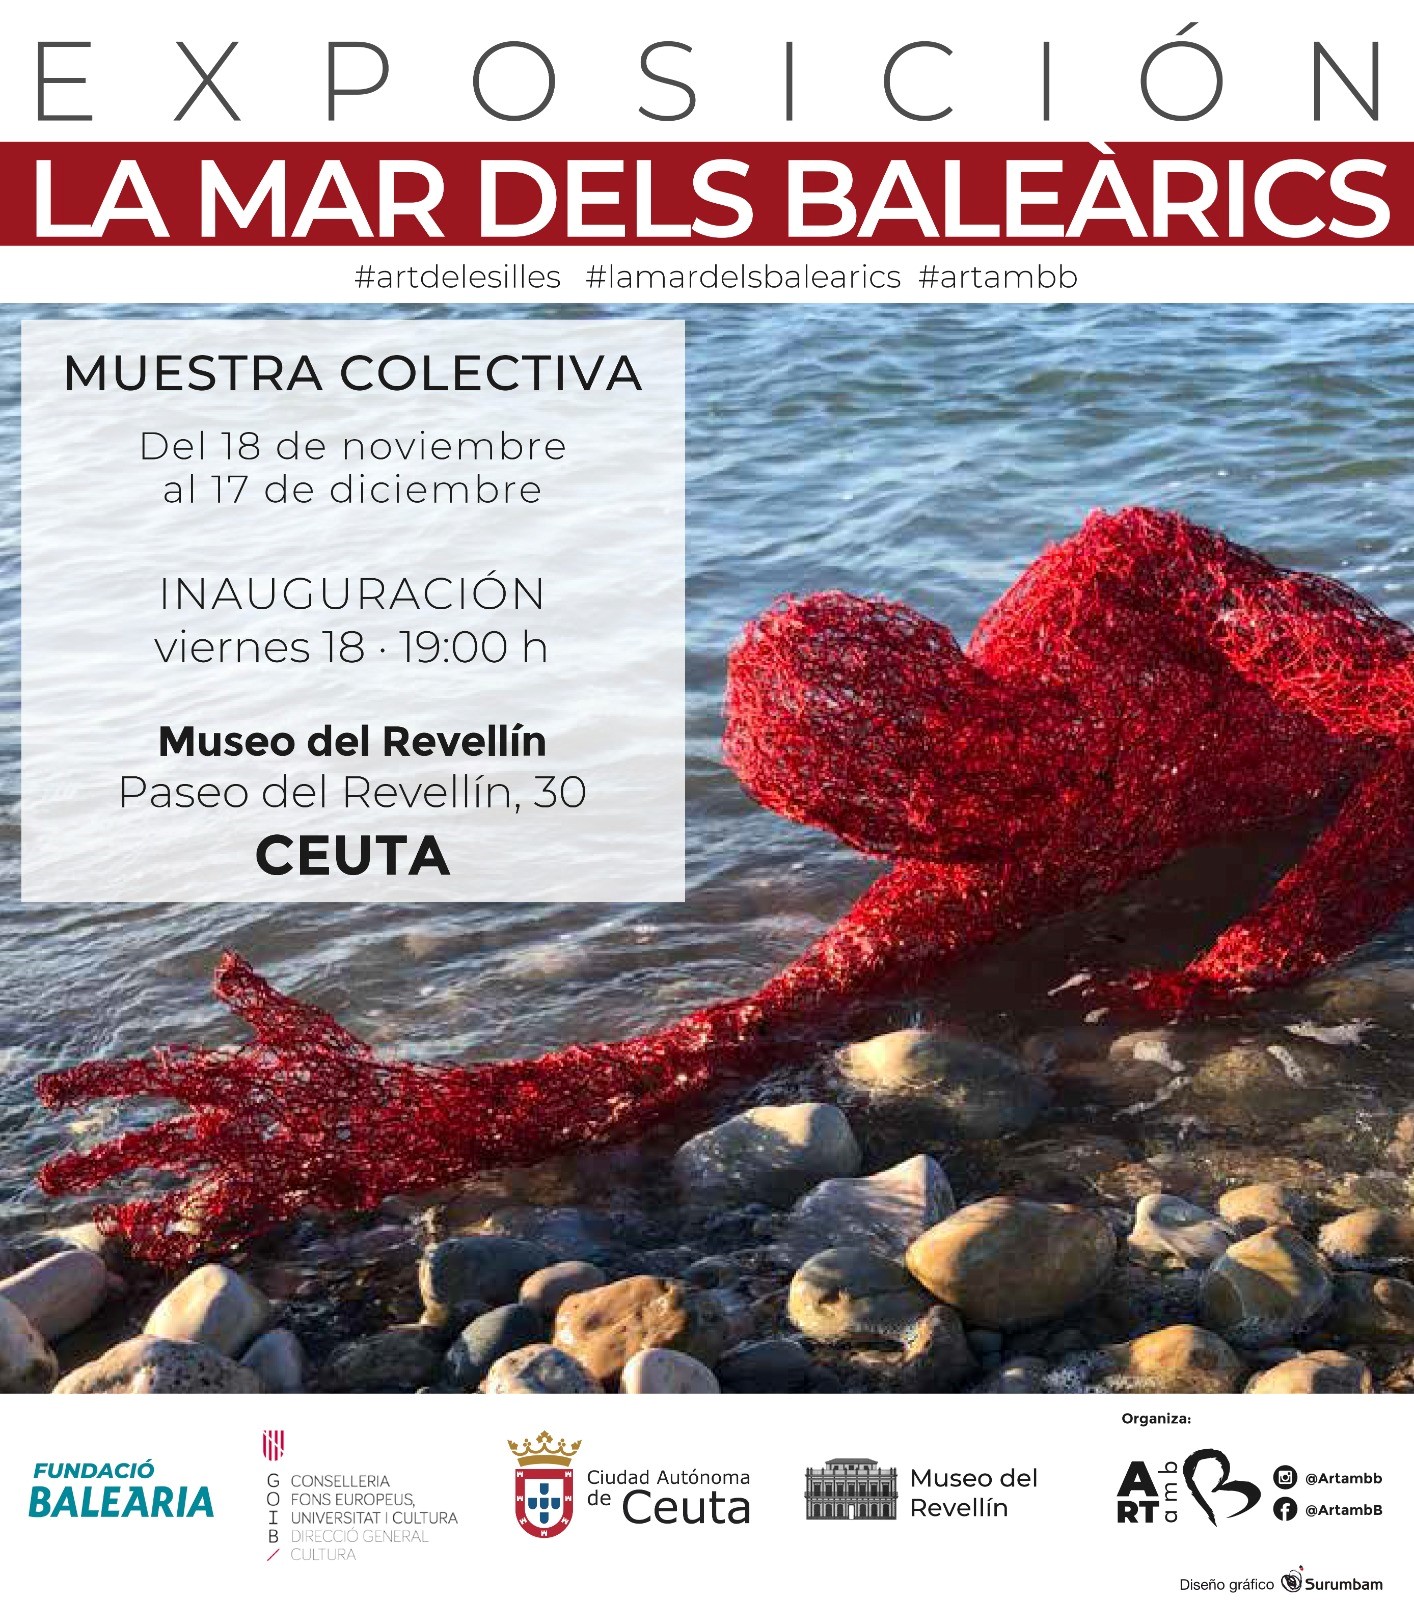 (Español) La Fundación Baleària inaugura la exposición ‘La mar dels Baleàrics’ en el Museo del Revellín de Ceuta